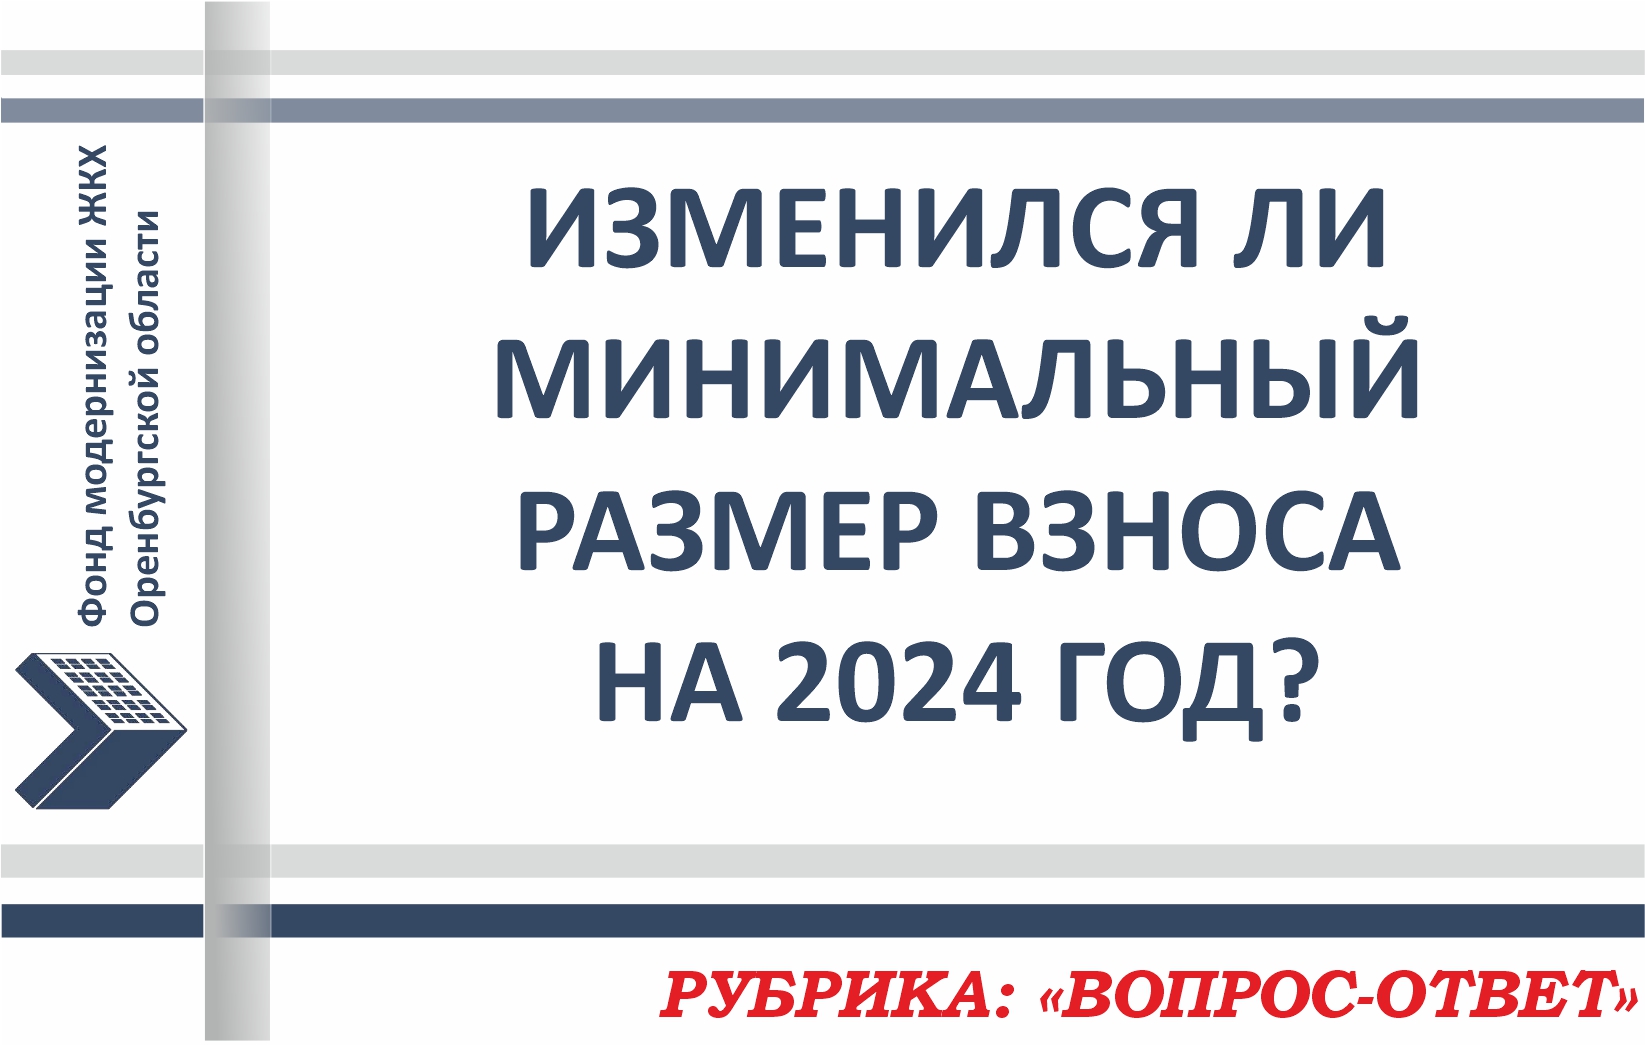 Рубрика: «ВОПРОС-ОТВЕТ» - Изменились ли тарифы на капитальный ремонт в 2024 году?